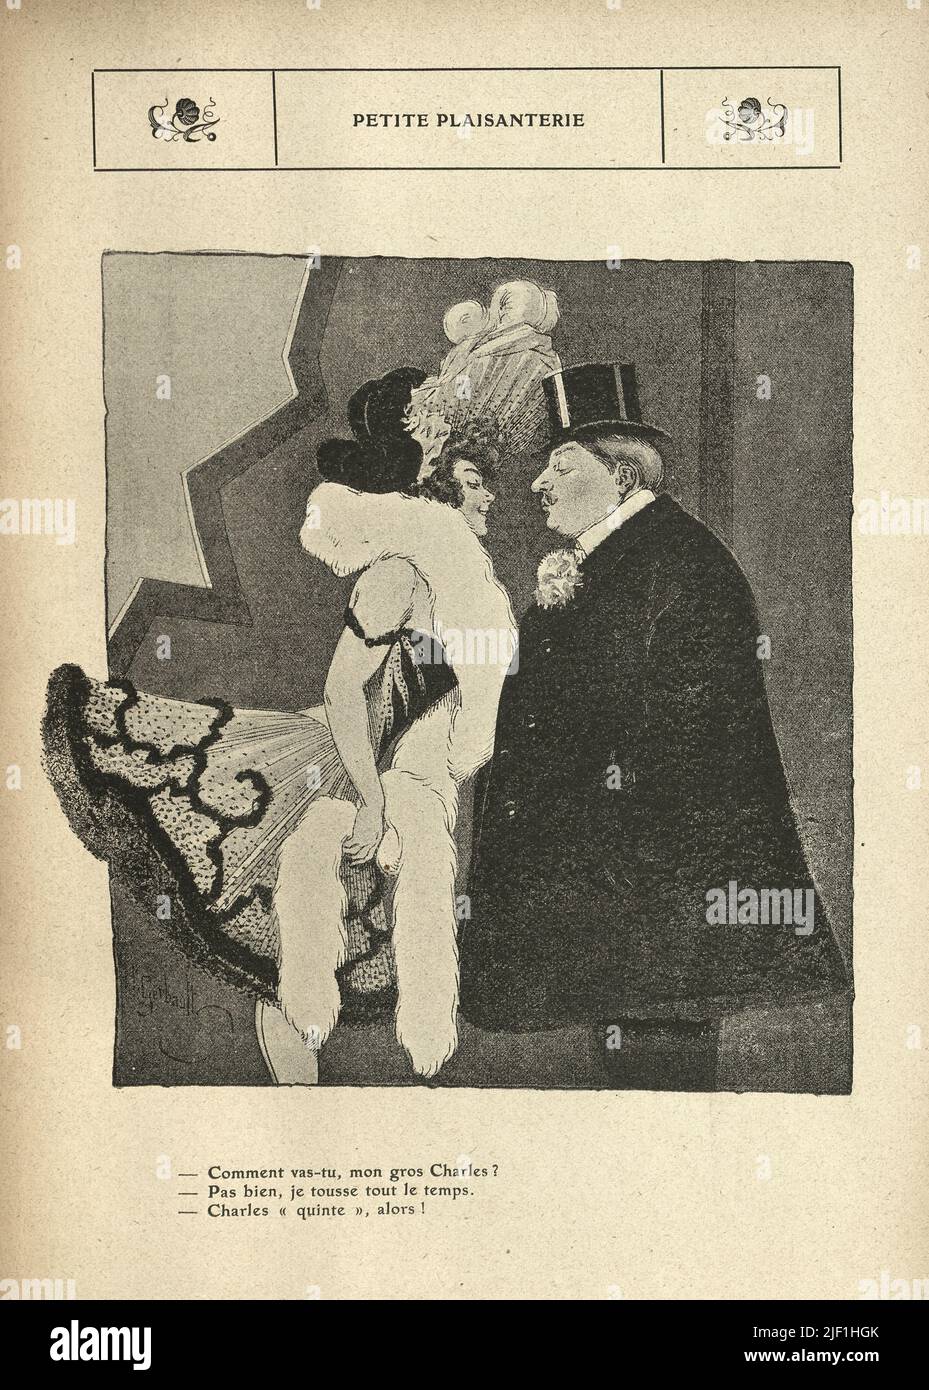 Dibujos animados franceses de época por Henry Gerbault, 1900s. Mujer que se inclina en el beso de un hombre, Showgirl. Petite plaisanterie Foto de stock